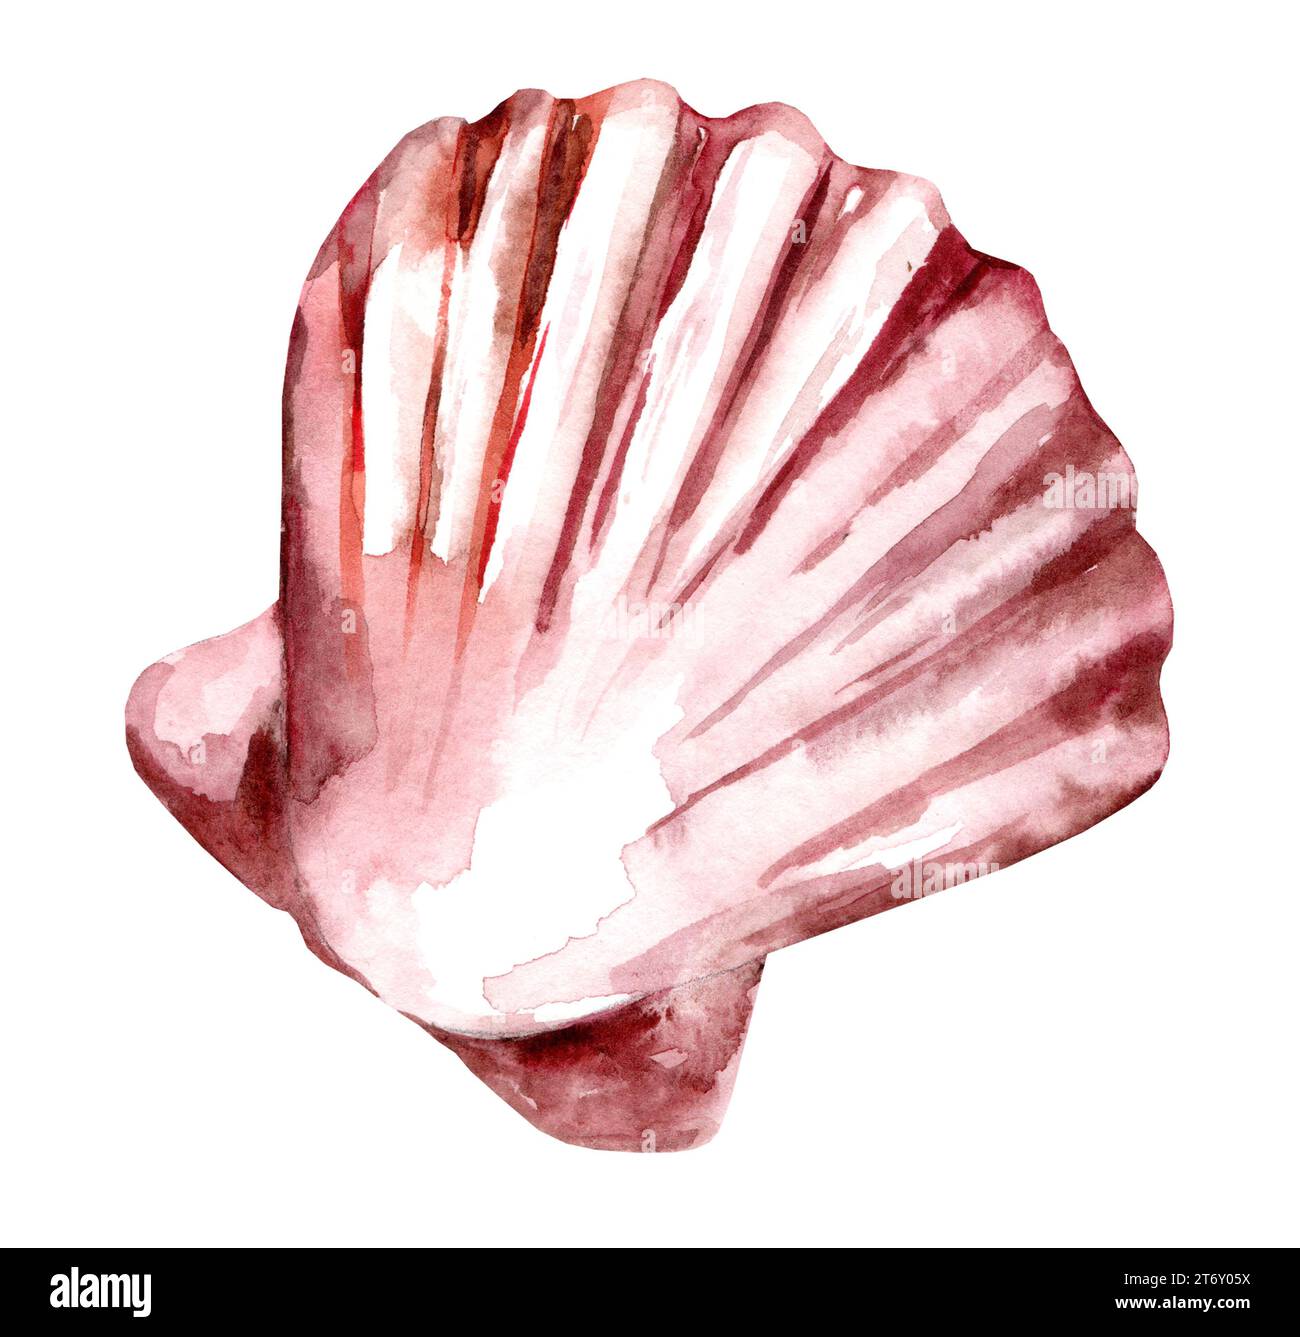 Acquerello Seashell. Immagine disegnata a mano di Scallop su sfondo bianco isolato. Disegno colorato di conchiglie marine. Fauna marina esotica. Underwa selvaggio Foto Stock